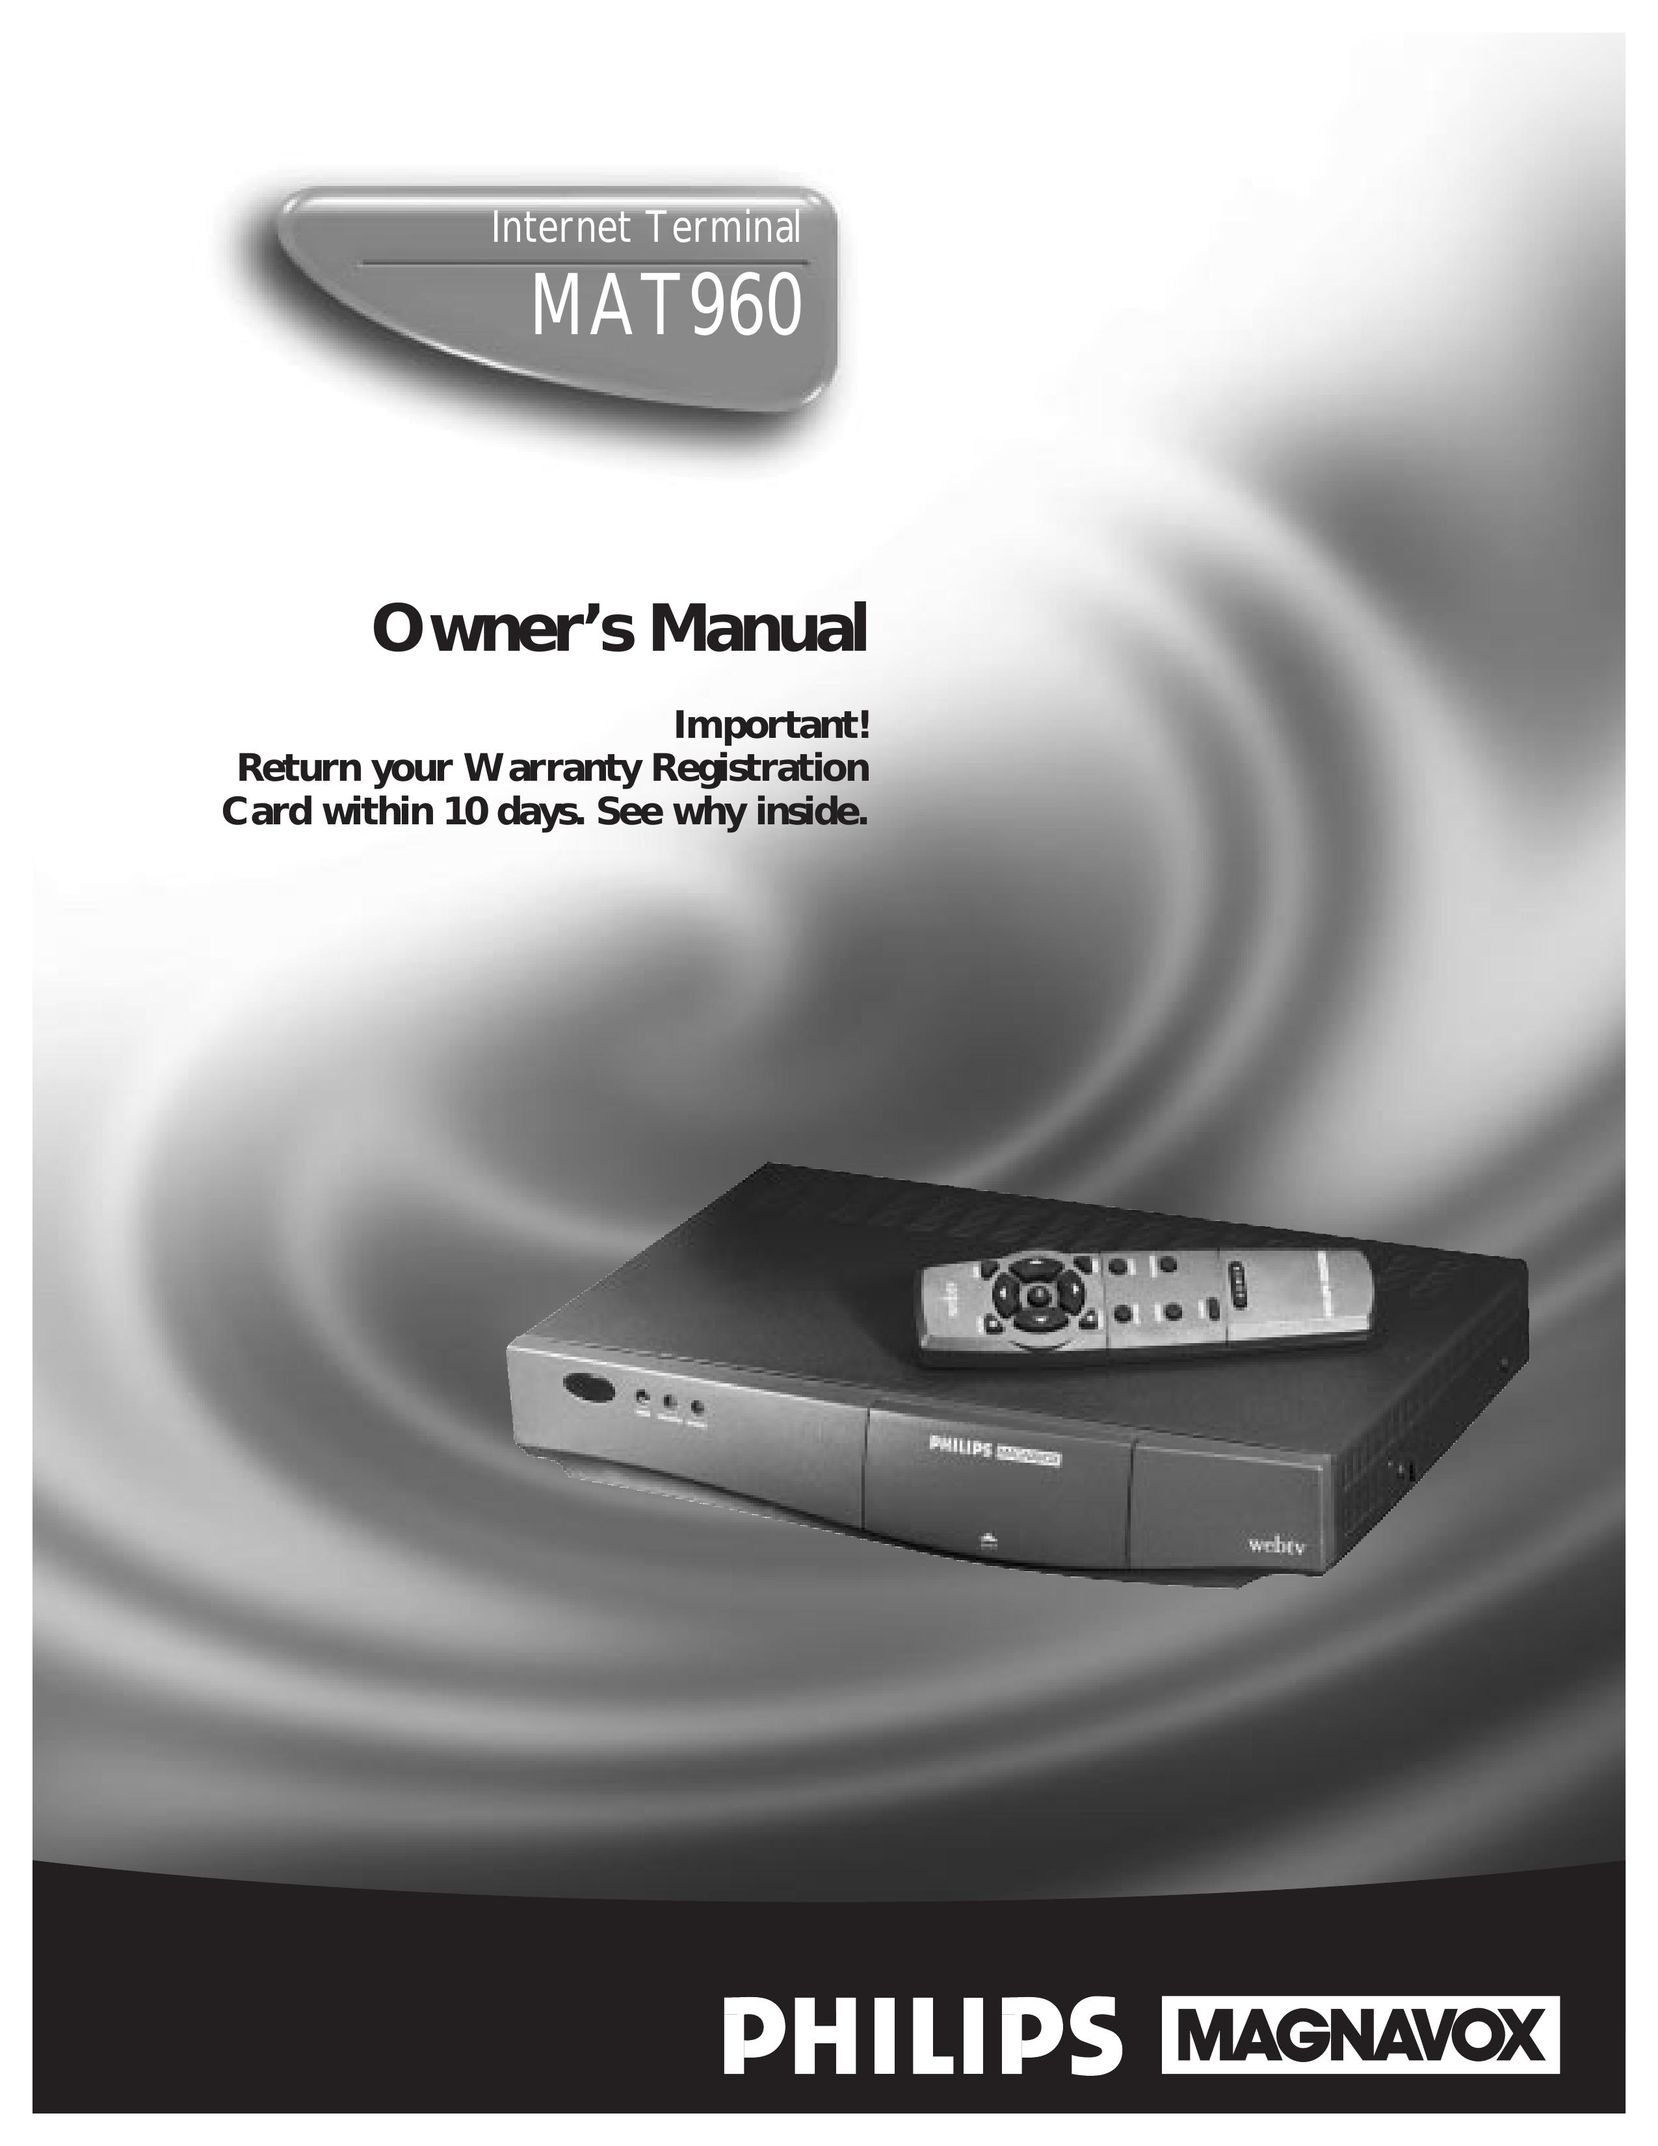 Philips MAT960 Credit Card Machine User Manual